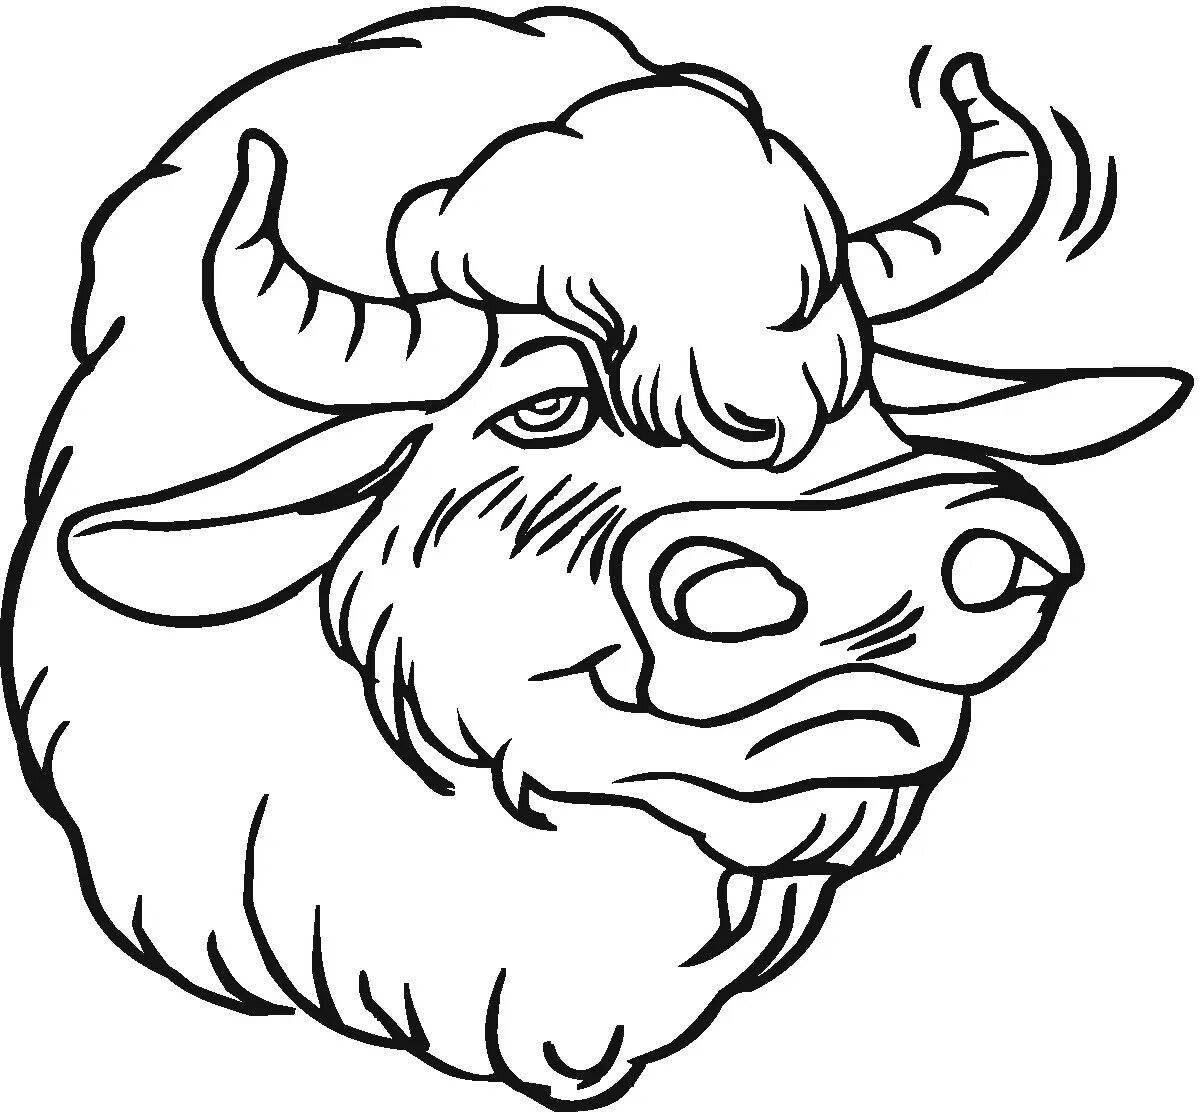 Palace buffalo coloring page